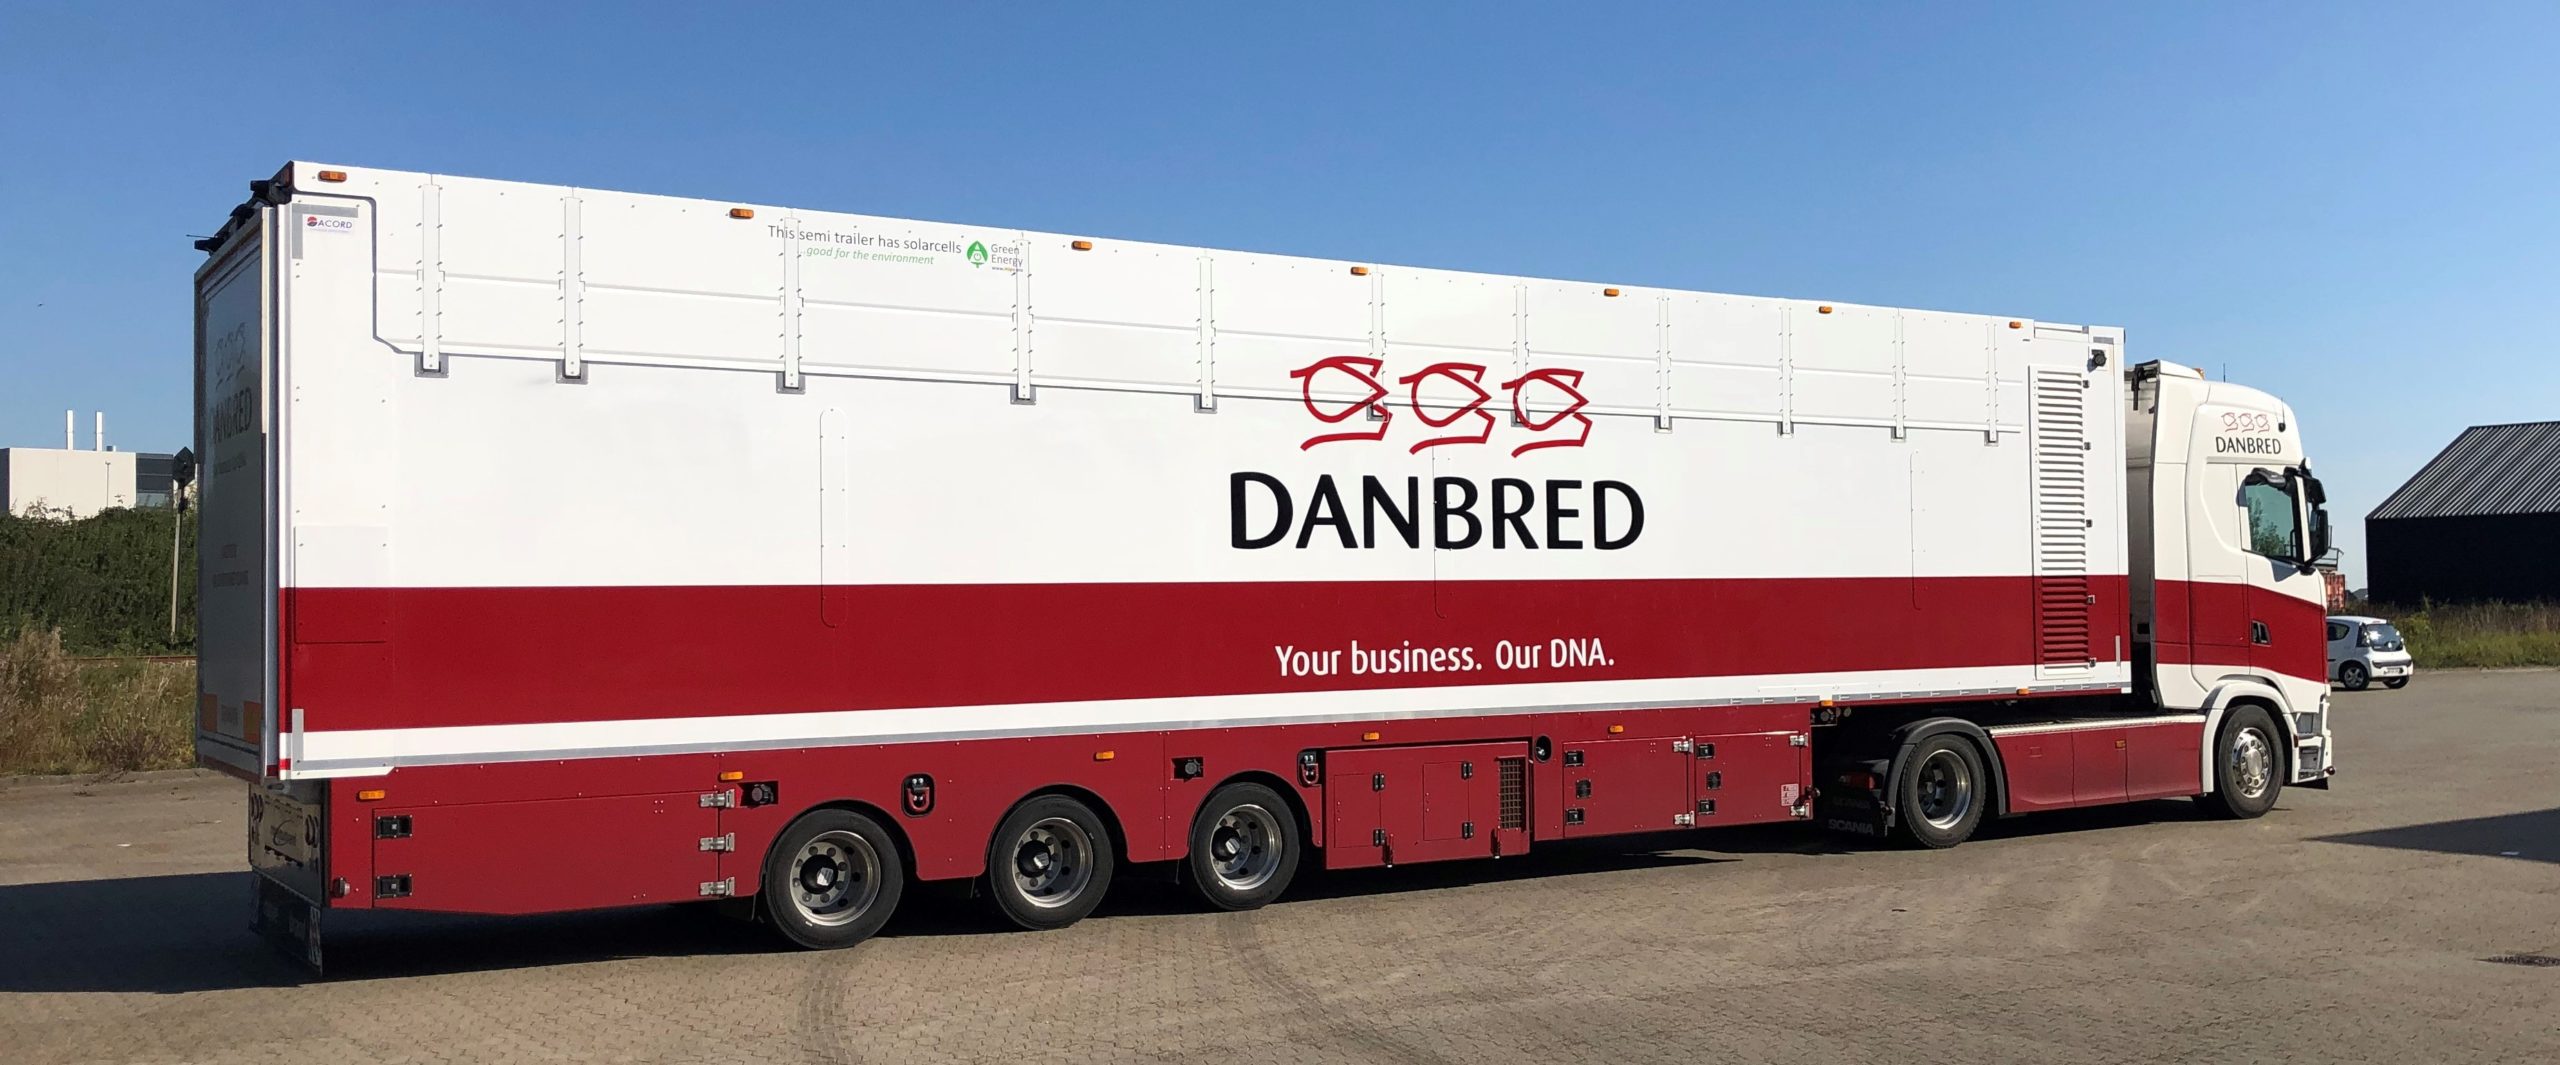 DanBred new 10 wheeler trailer for export